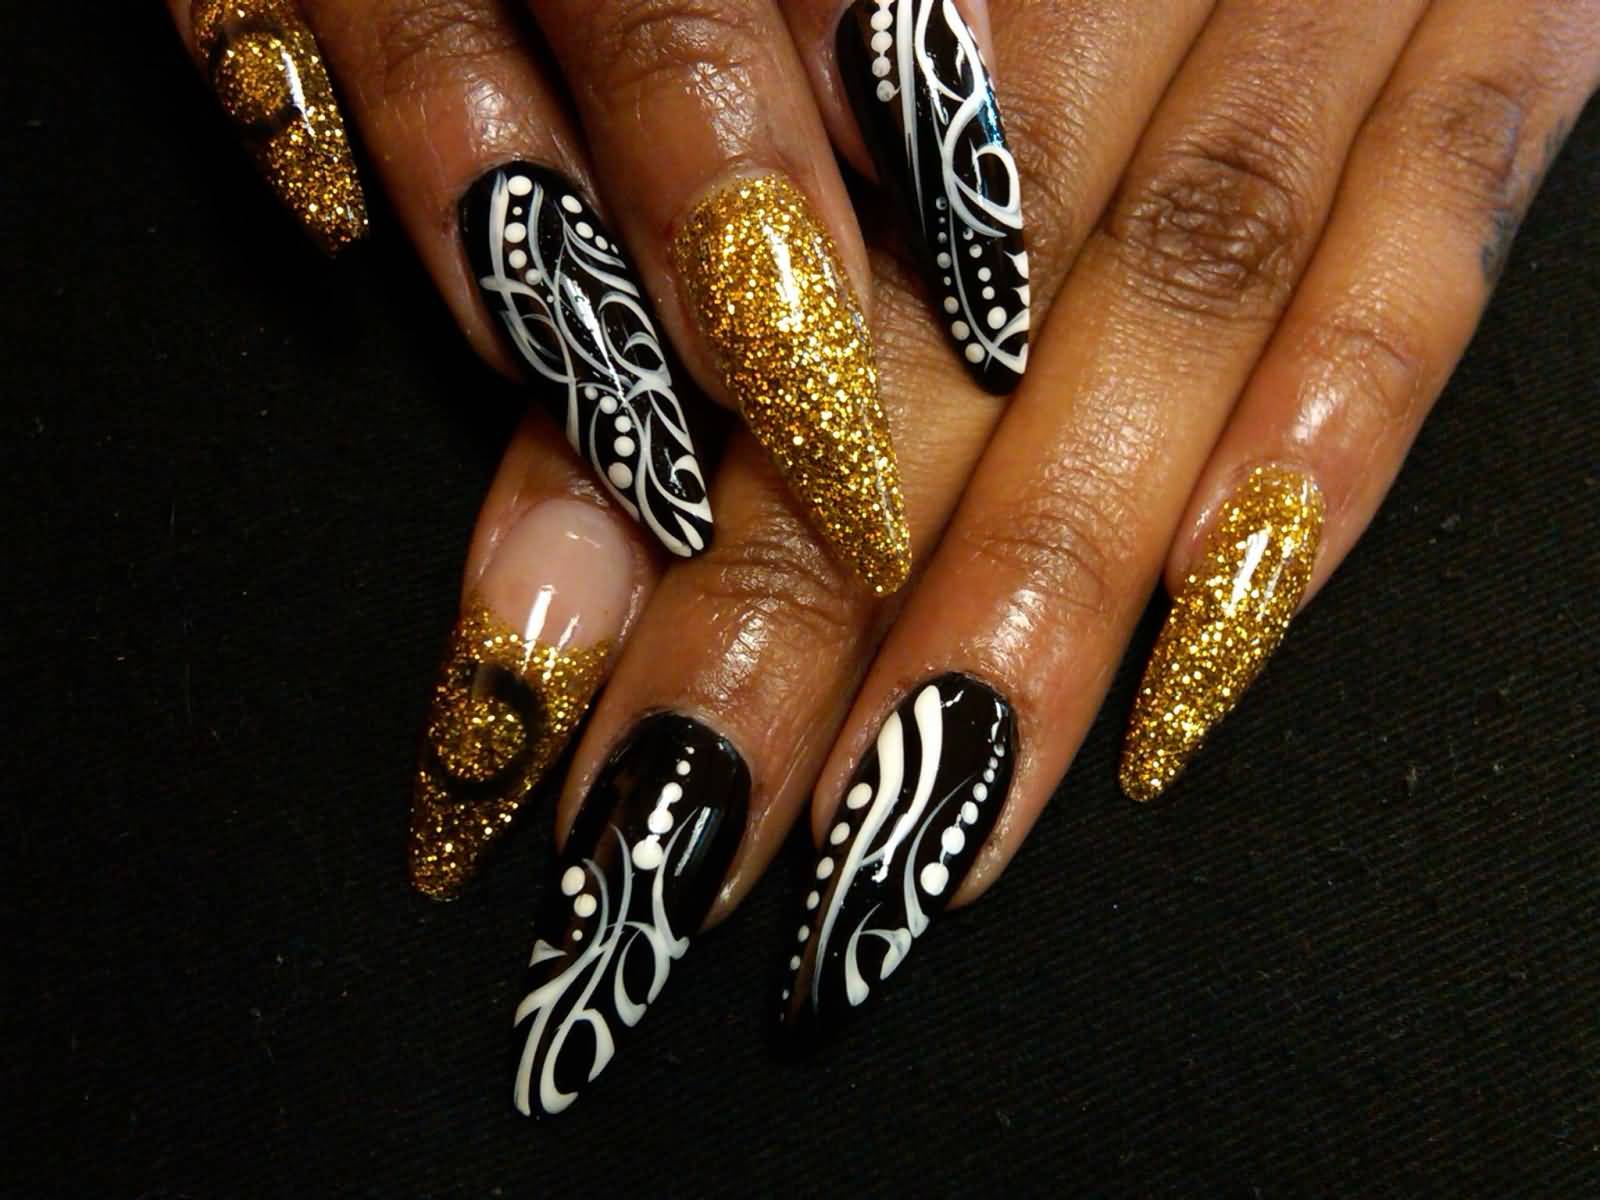 Black And White Stripes Design With Gold Glitter Stiletto Nail Art